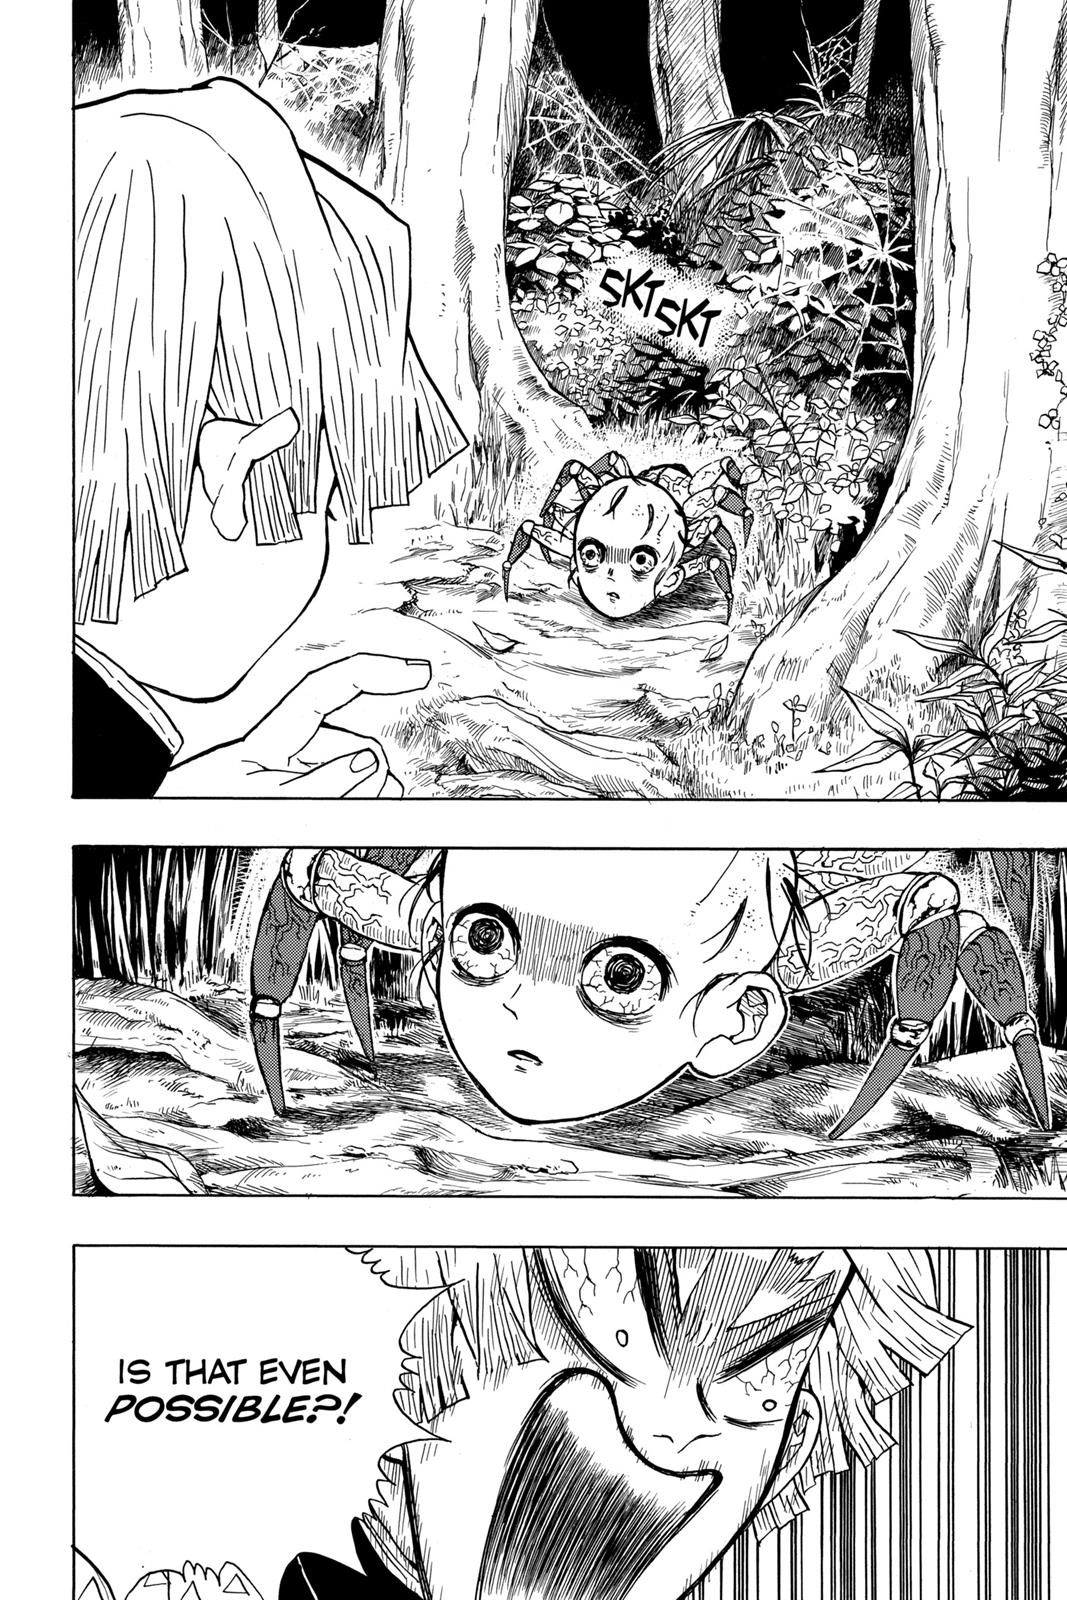 Demon Slayer Manga Manga Chapter - 32 - image 12